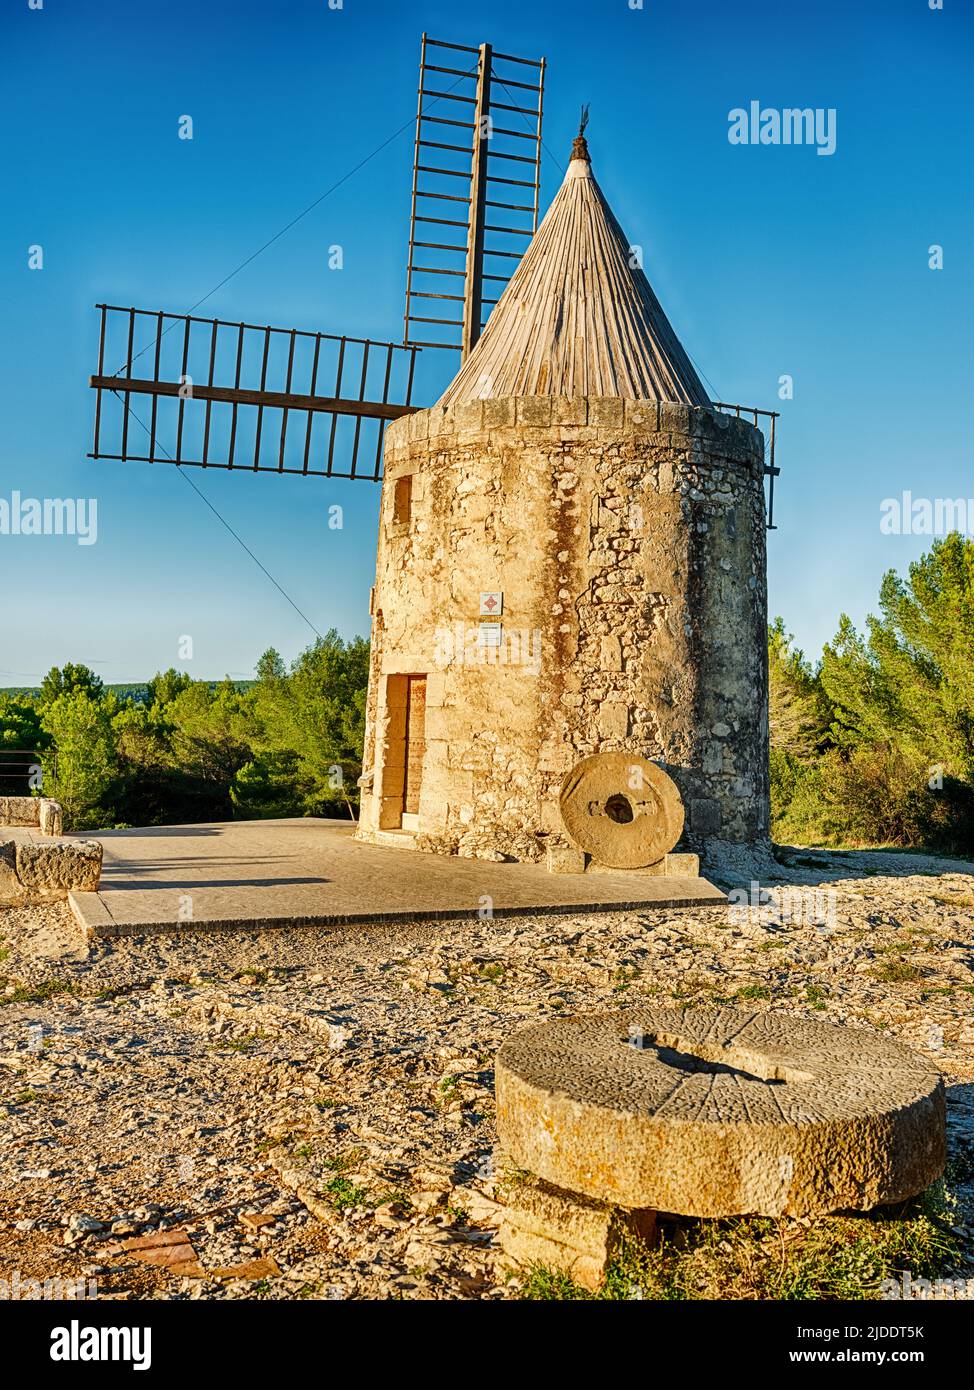 Le vieux moulin à vent, ou moulin, à Fontvielle est un monument historique de France. Banque D'Images